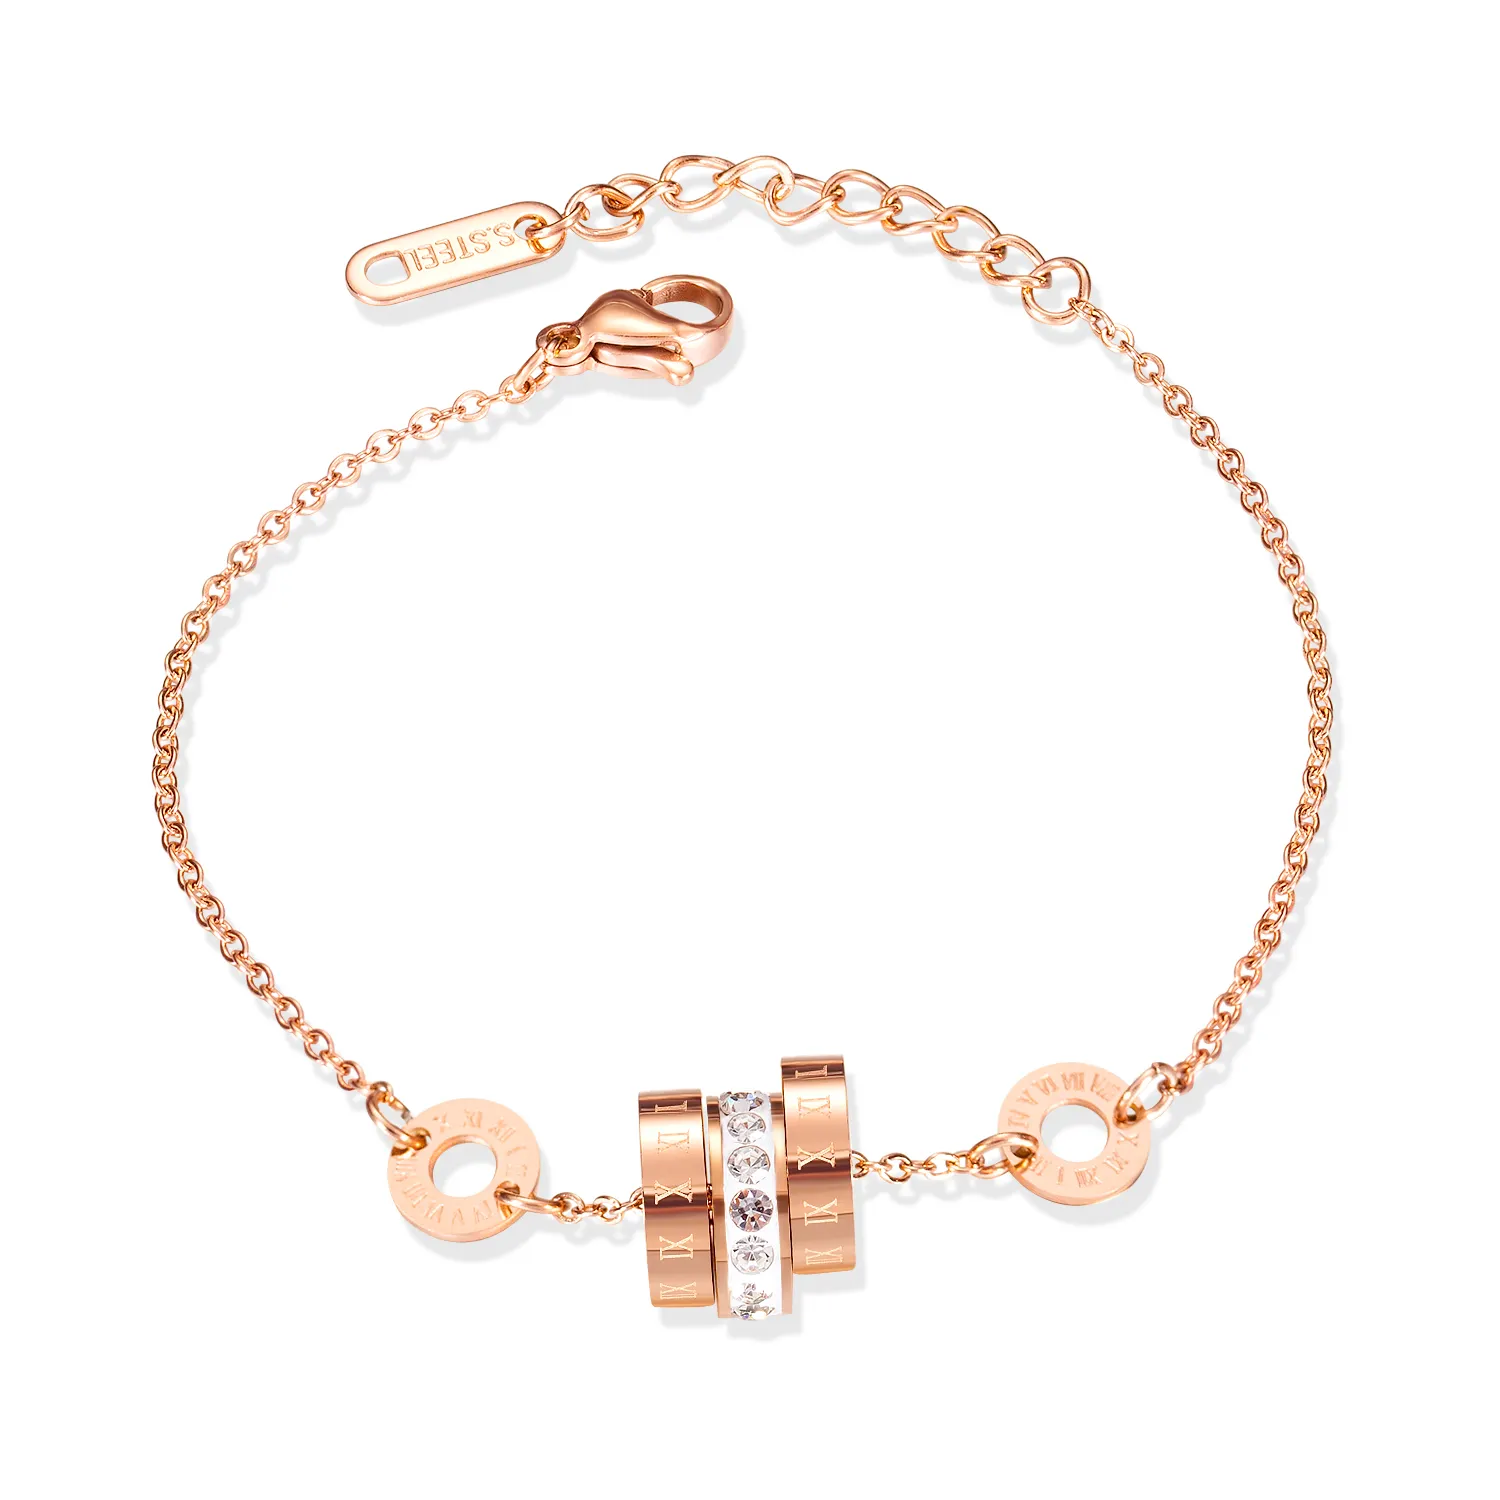 Best Design Elegant Charm Gold Trendy Rose Gold Stainless Steel Bracelets Gift For Women